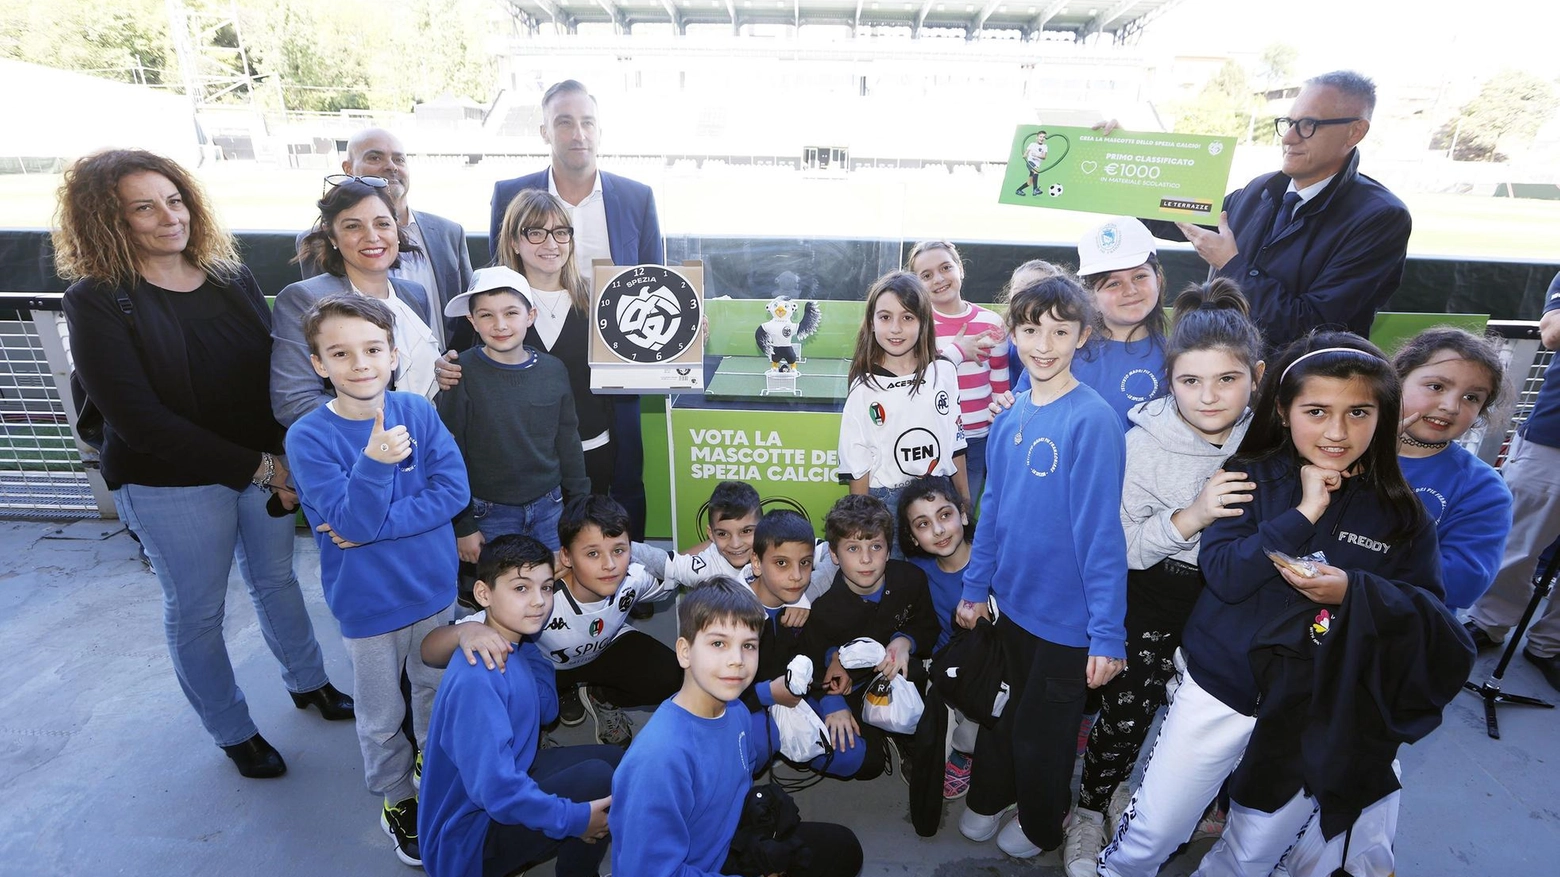 L’iniziativa dello Spezia Calcio in collaborazione col centro Le Terrazze. La premiazione ieri al Picco con la partecipazione di oltre 150 bambini.